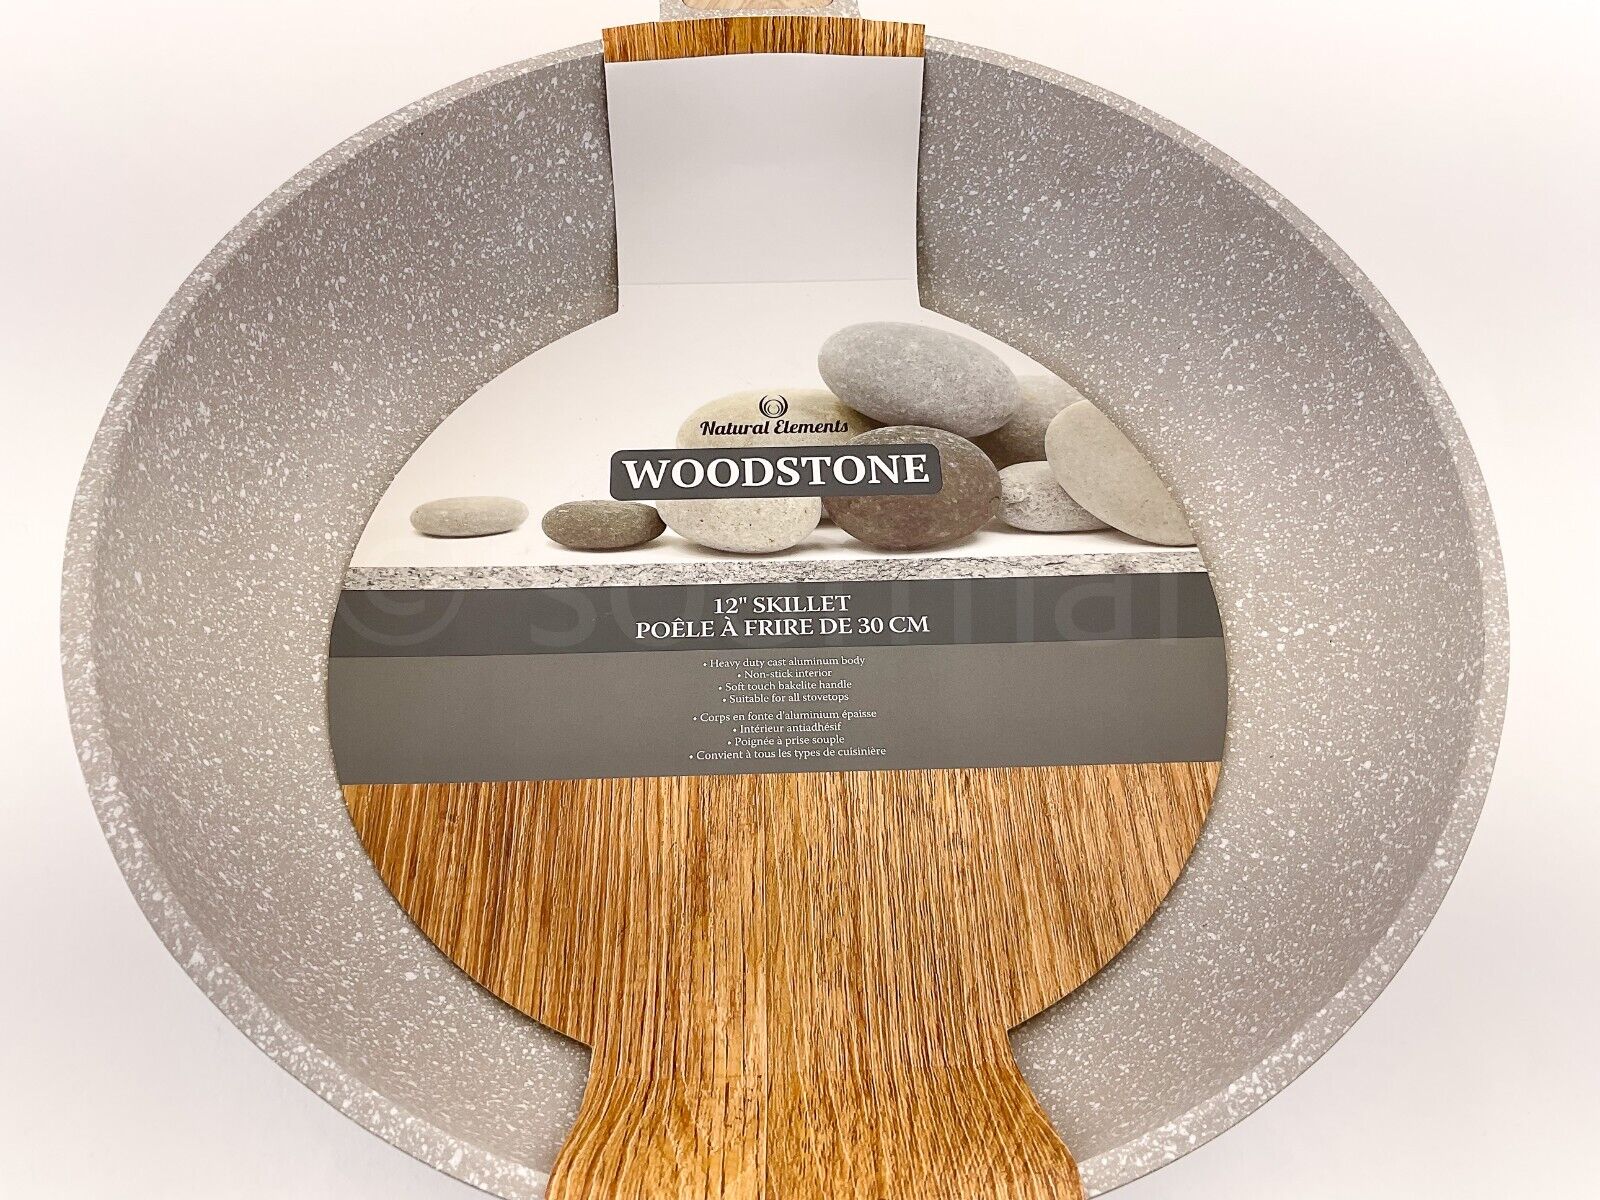 Natural Elements Woodstone Big Skillet/Frying Pan Nonstick Heavy Duty 12”  Inch сковороды и сотейники V92042353 купить по выгодной цене в  интернет-магазине  с доставкой